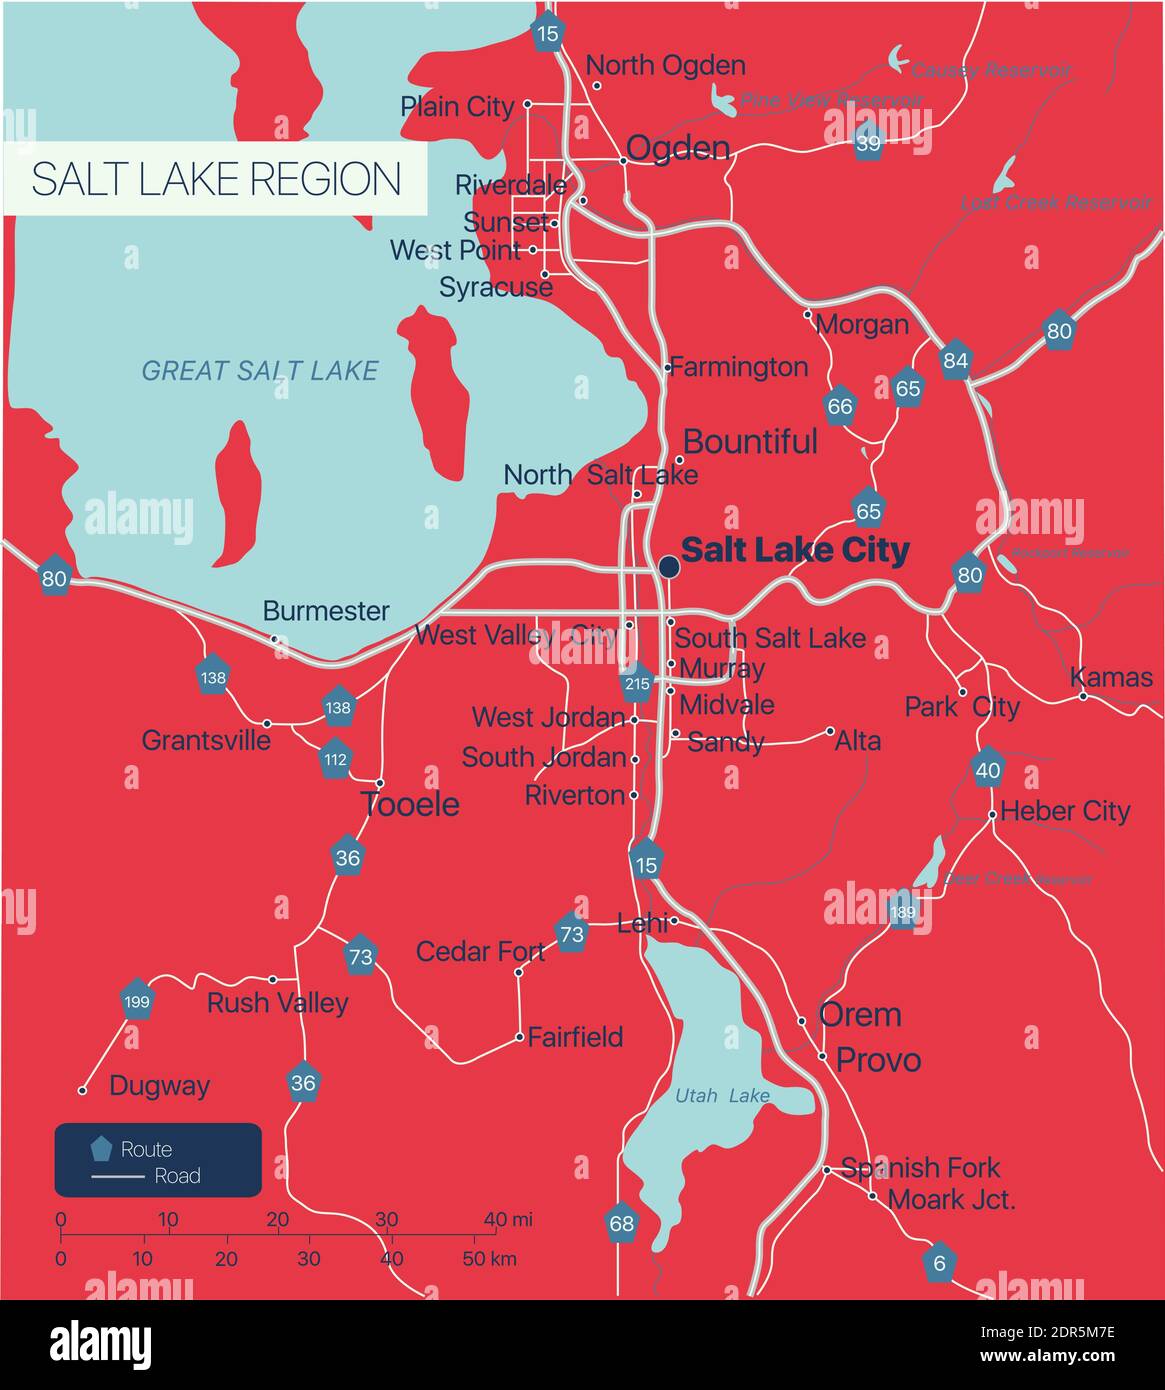 Salt Lake Region Detaillierte bearbeitbare Karte mit Städten und Städten, geografischen Standorten, Straßen, Eisenbahnen, Autobahnen und US-Autobahnen. Vector EPS-10-Datei, tr Stock Vektor